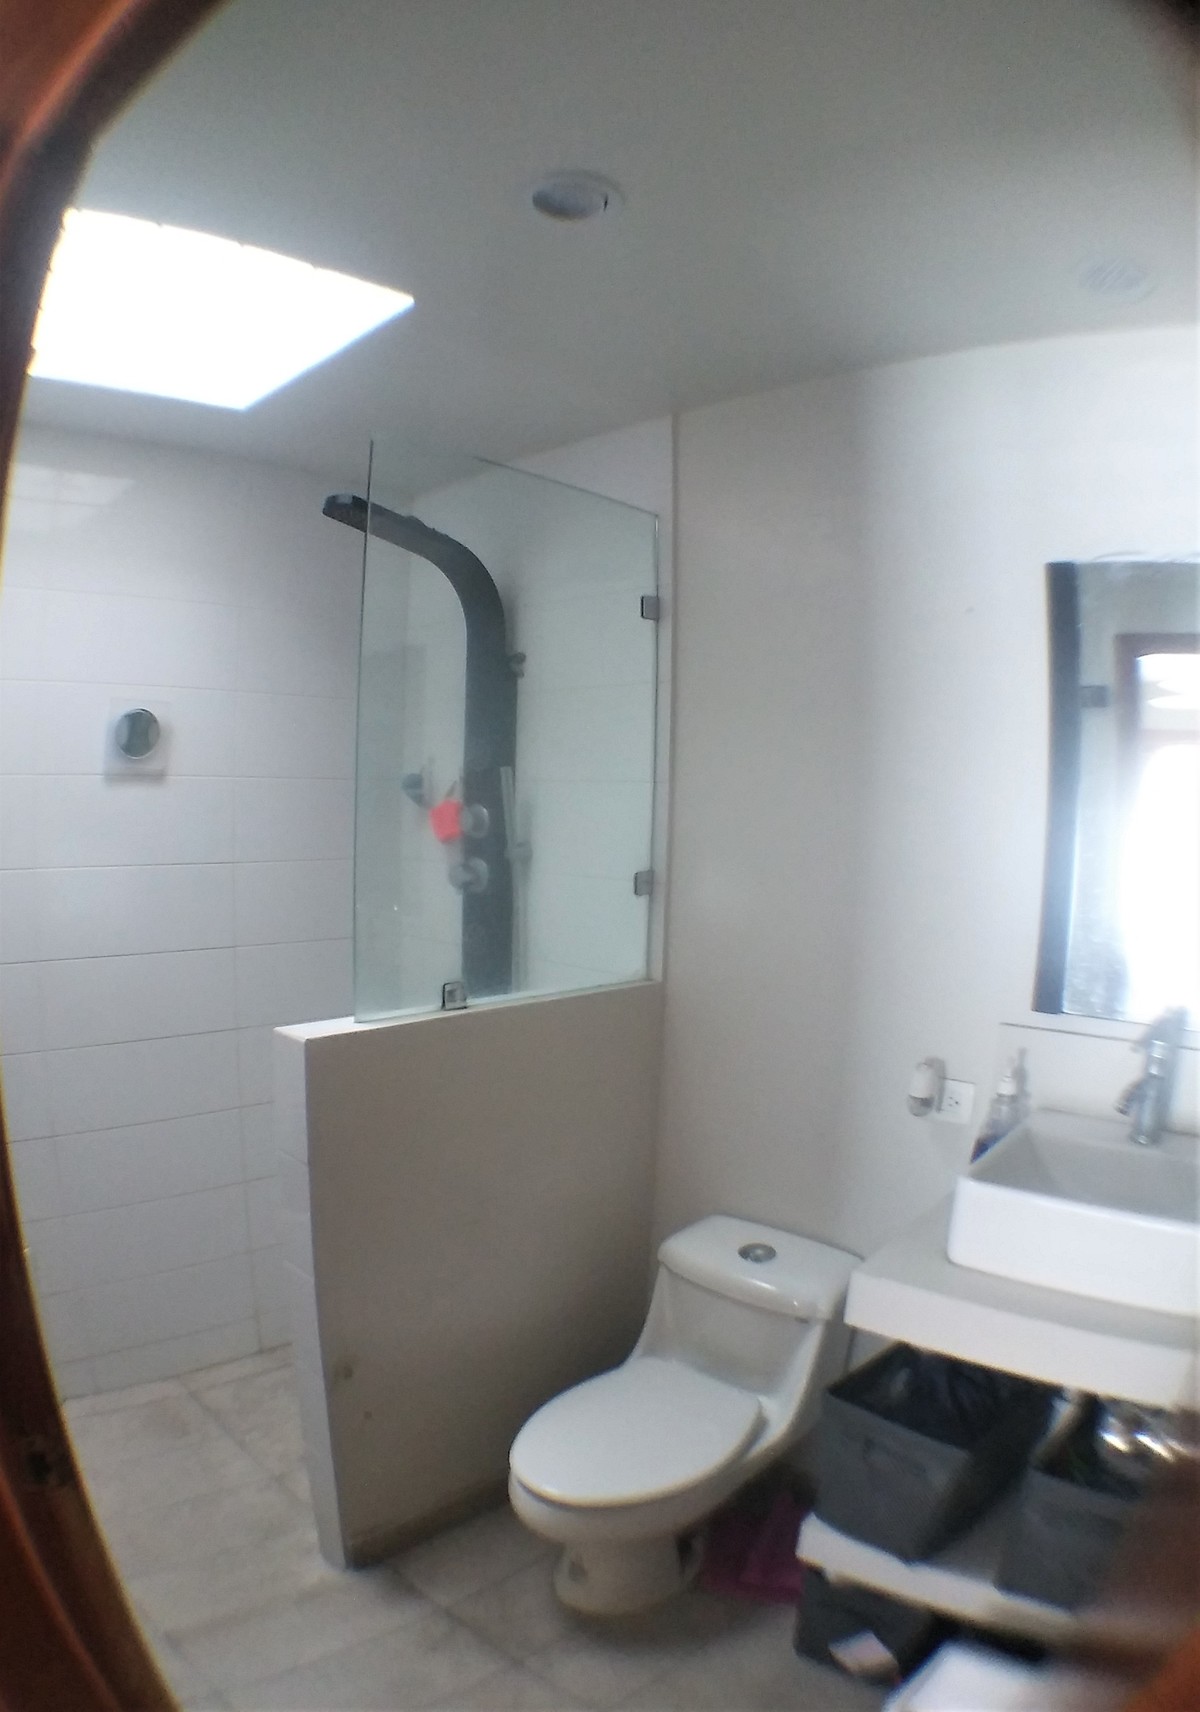 12 de 13: baño de recámara principal con ducha multimodo